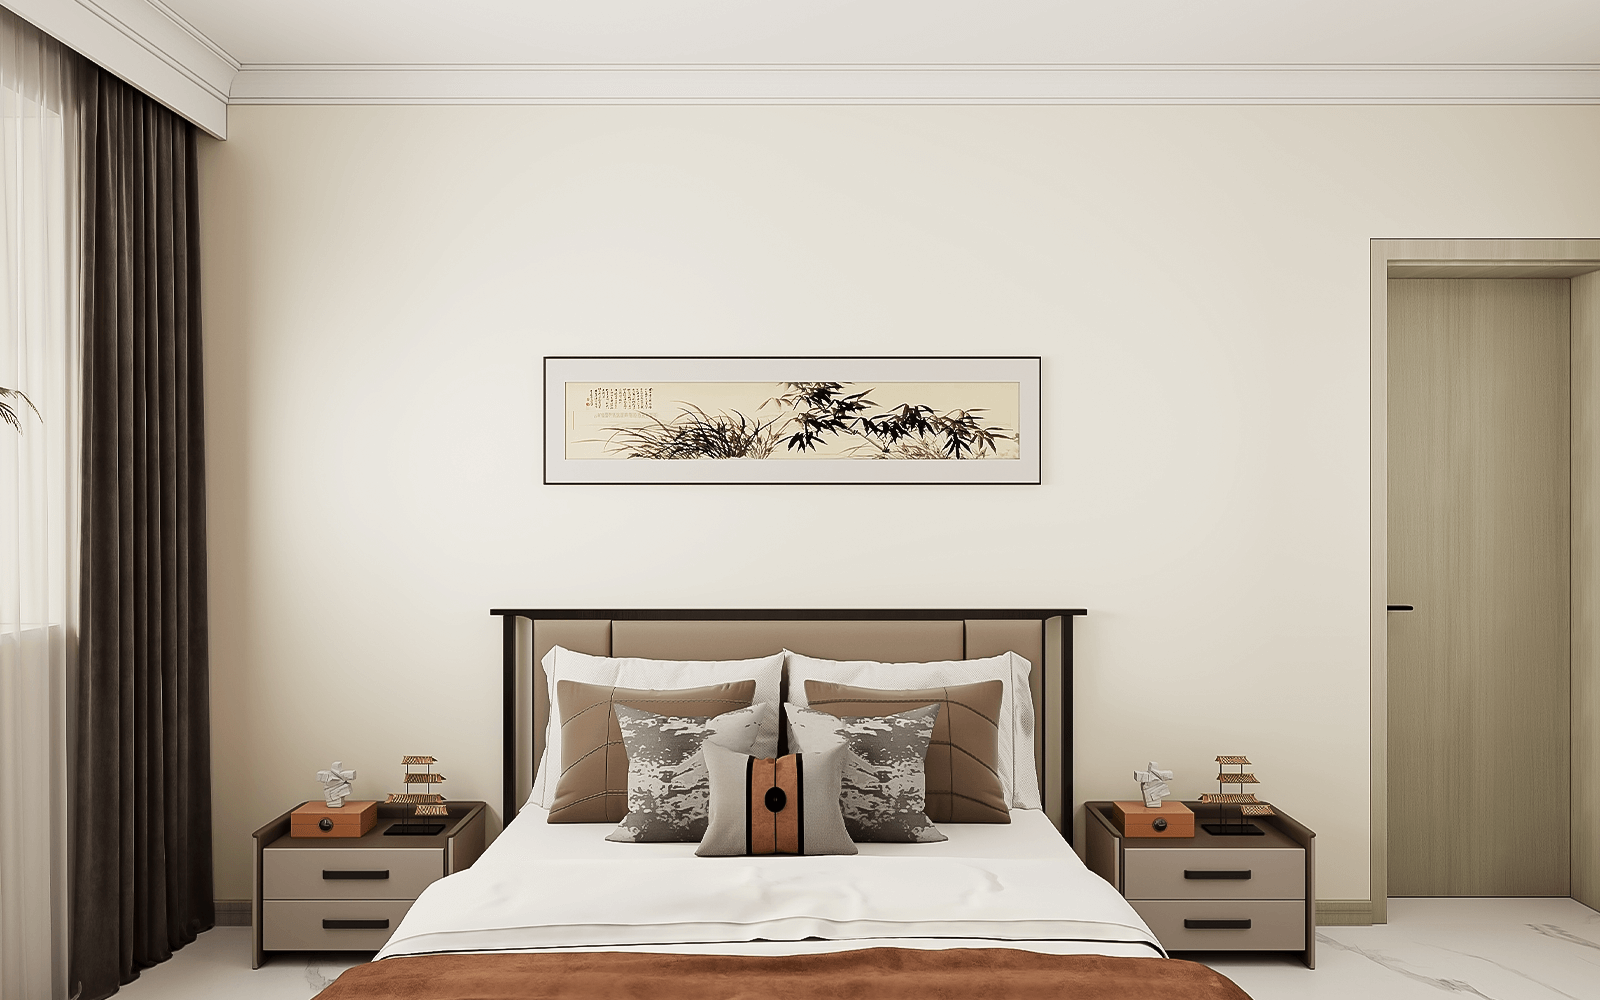 主卧的家居摆放遵循了中式的对称原则，床位于中间，两侧为床头柜。床头柜是抽屉款式，搭配背景墙的竹韵挂画，非常有韵味。